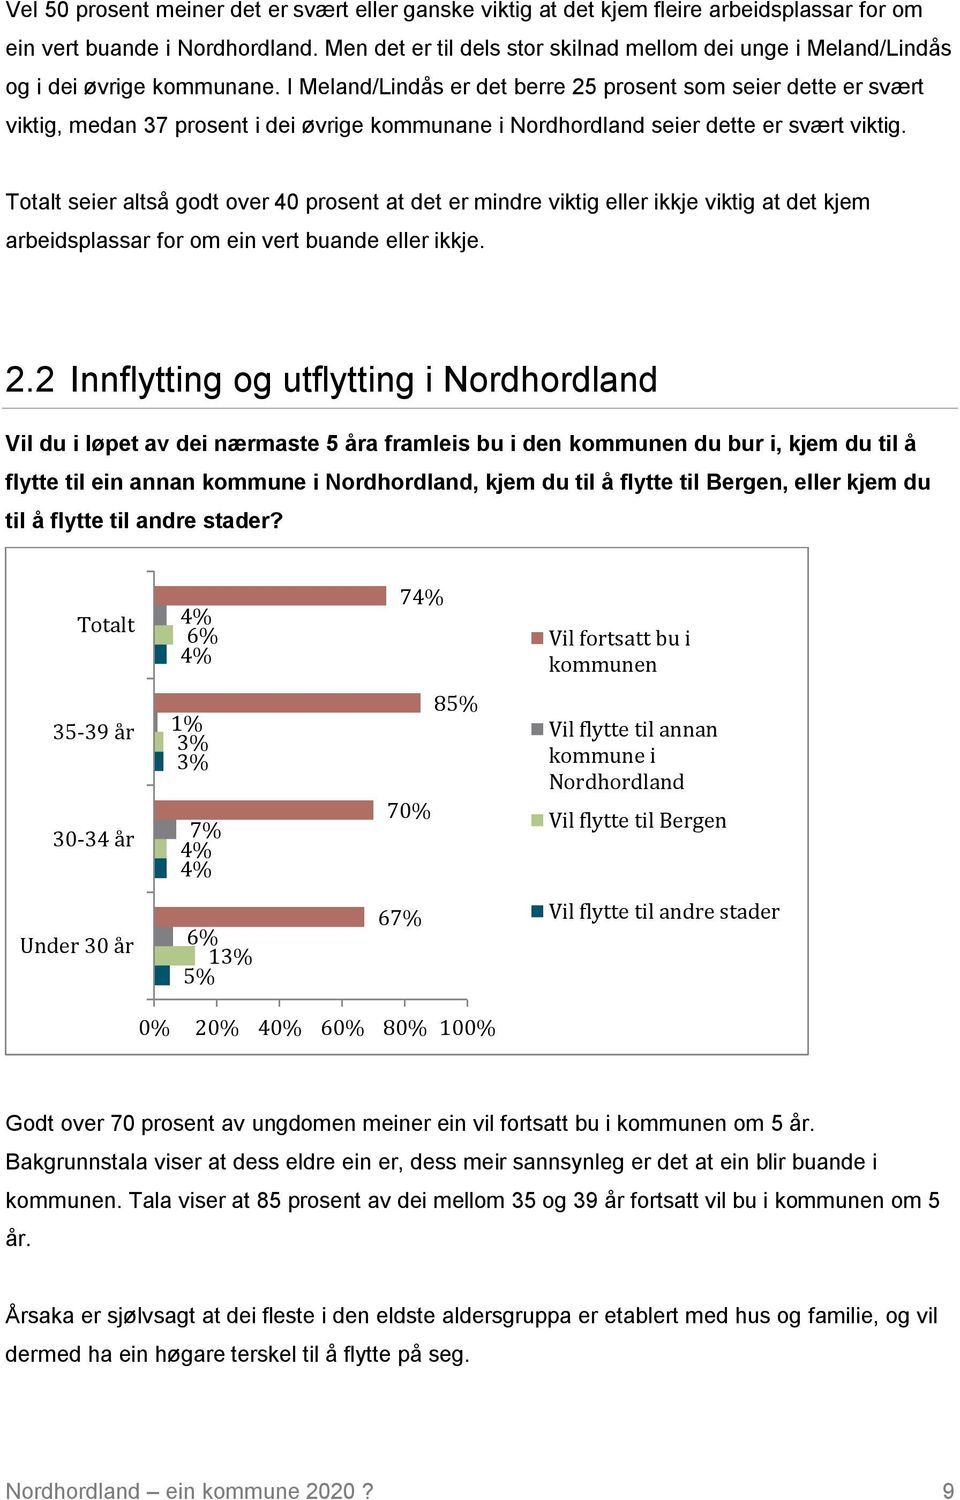 I Meland/Lindås er det berre 25 prosent som seier dette er svært viktig, medan 37 prosent i dei øvrige kommunane i Nordhordland seier dette er svært viktig.